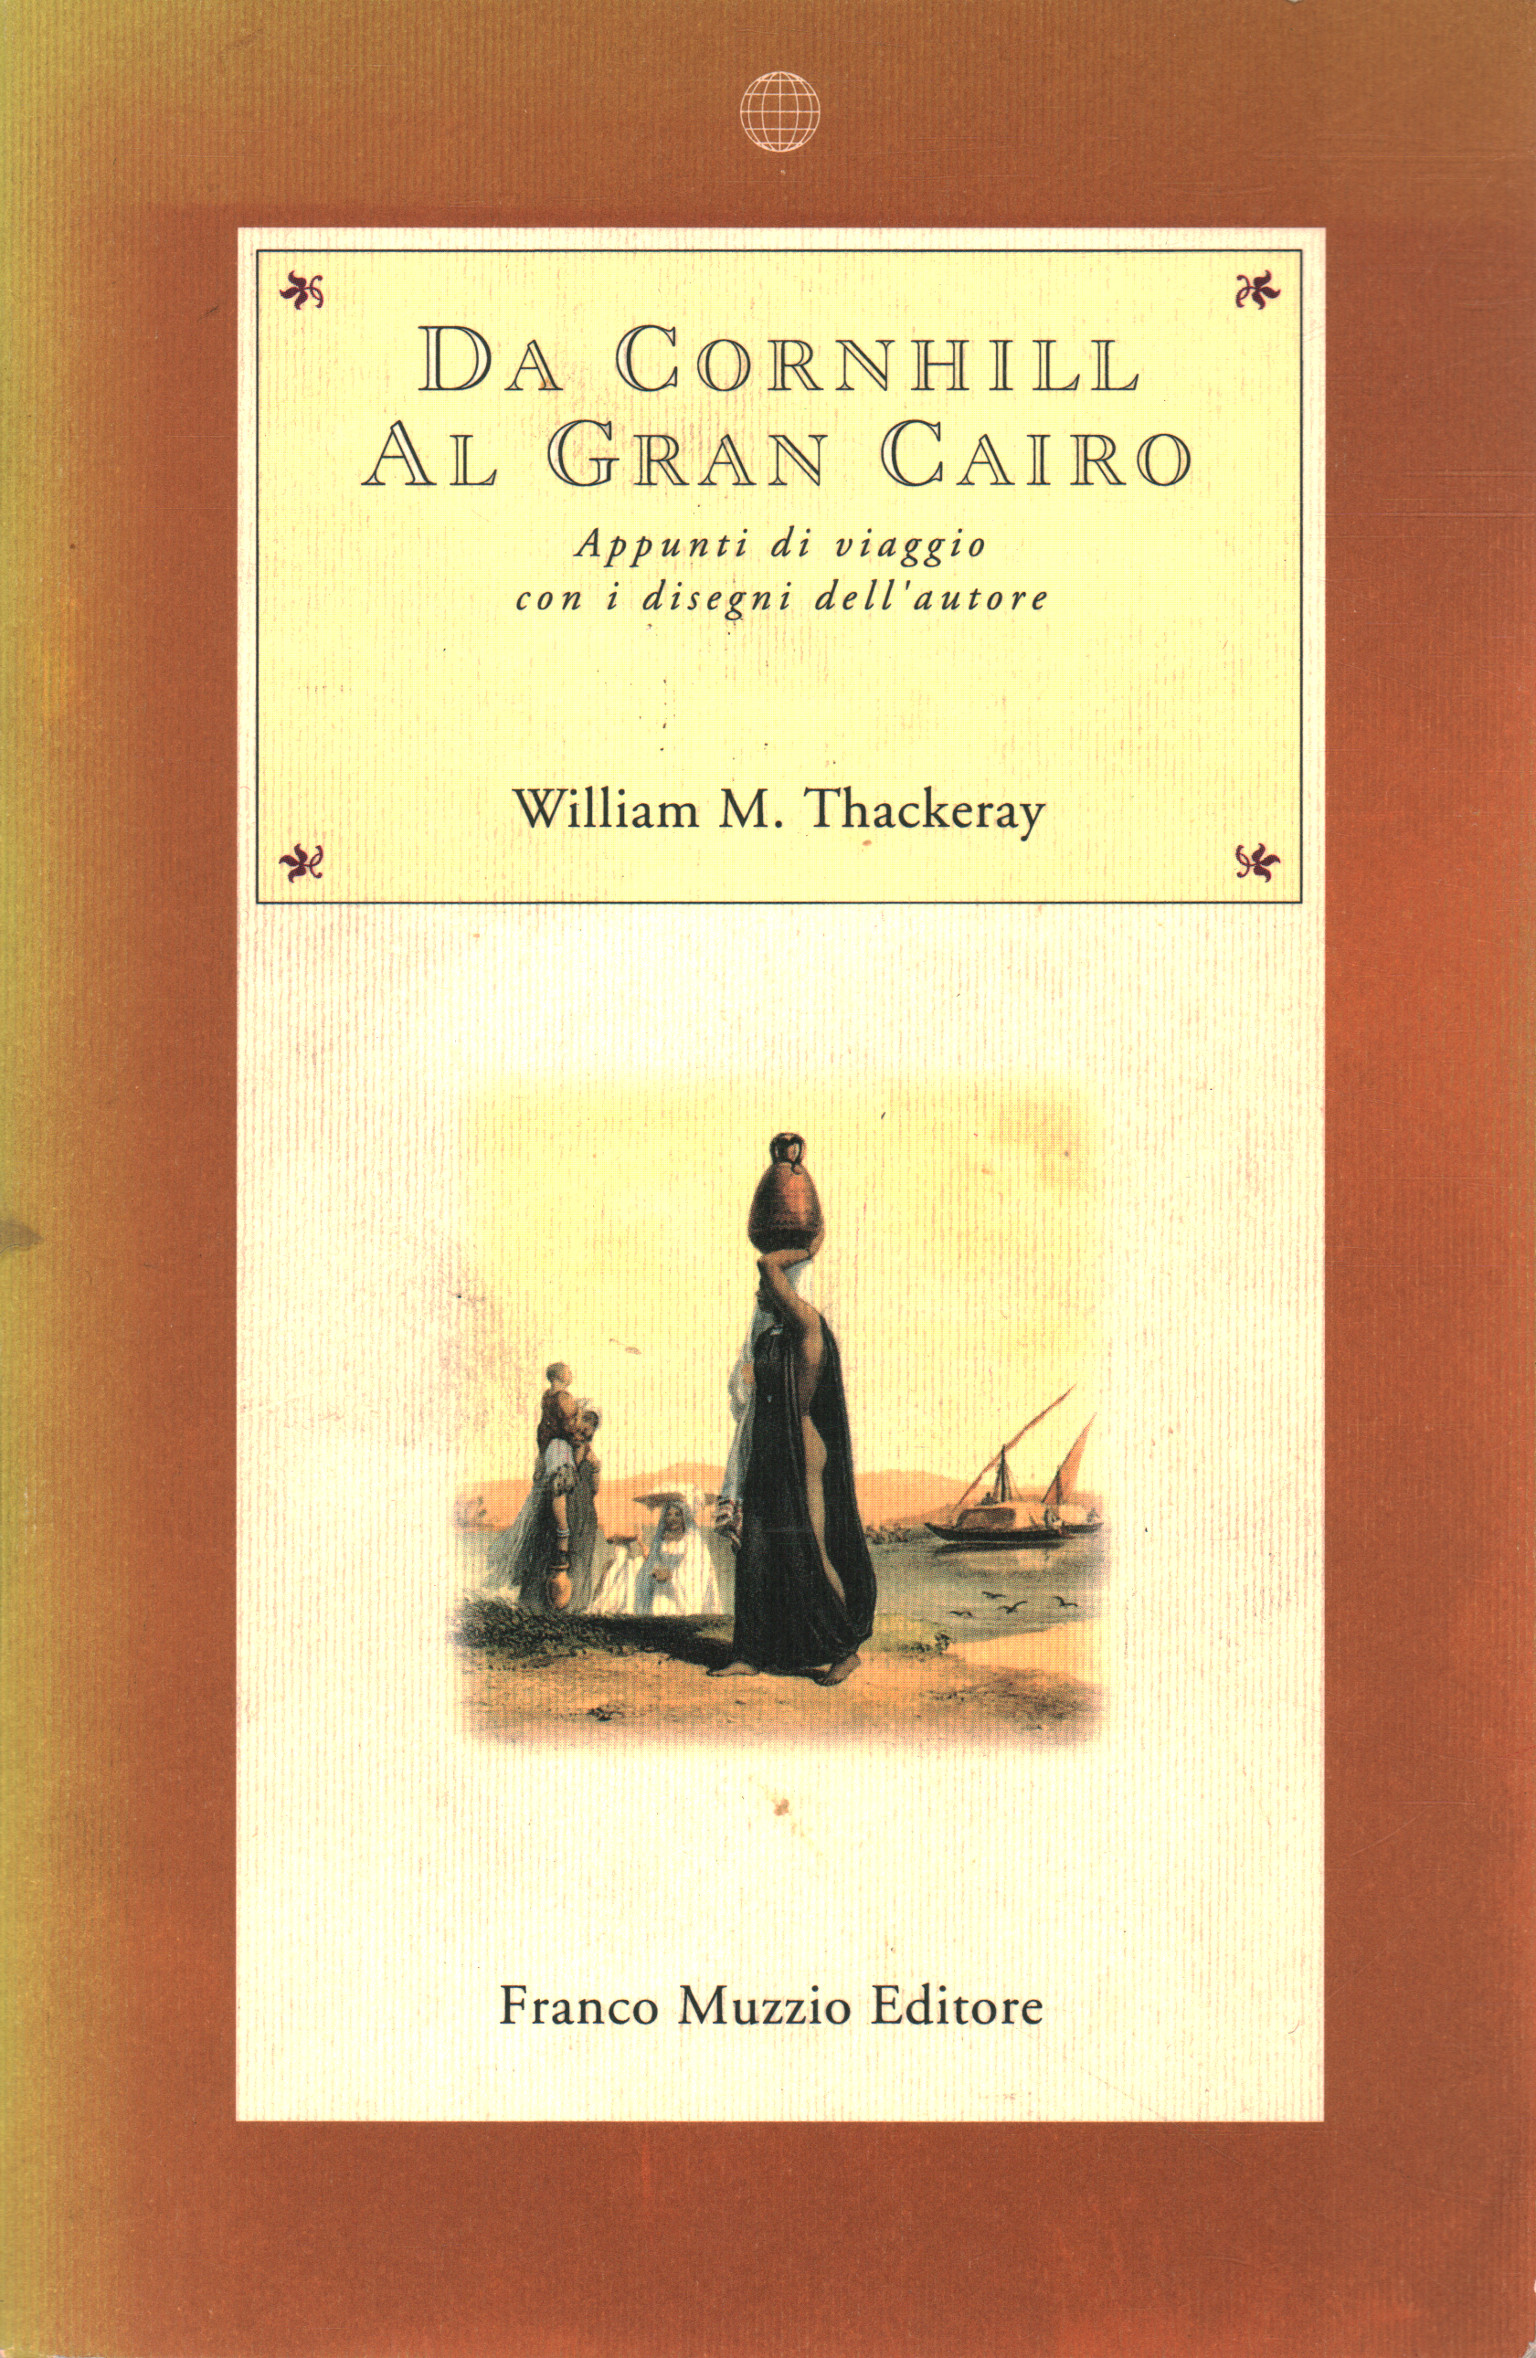 From Cornhill to Grand Cairo, William M. Thackeray